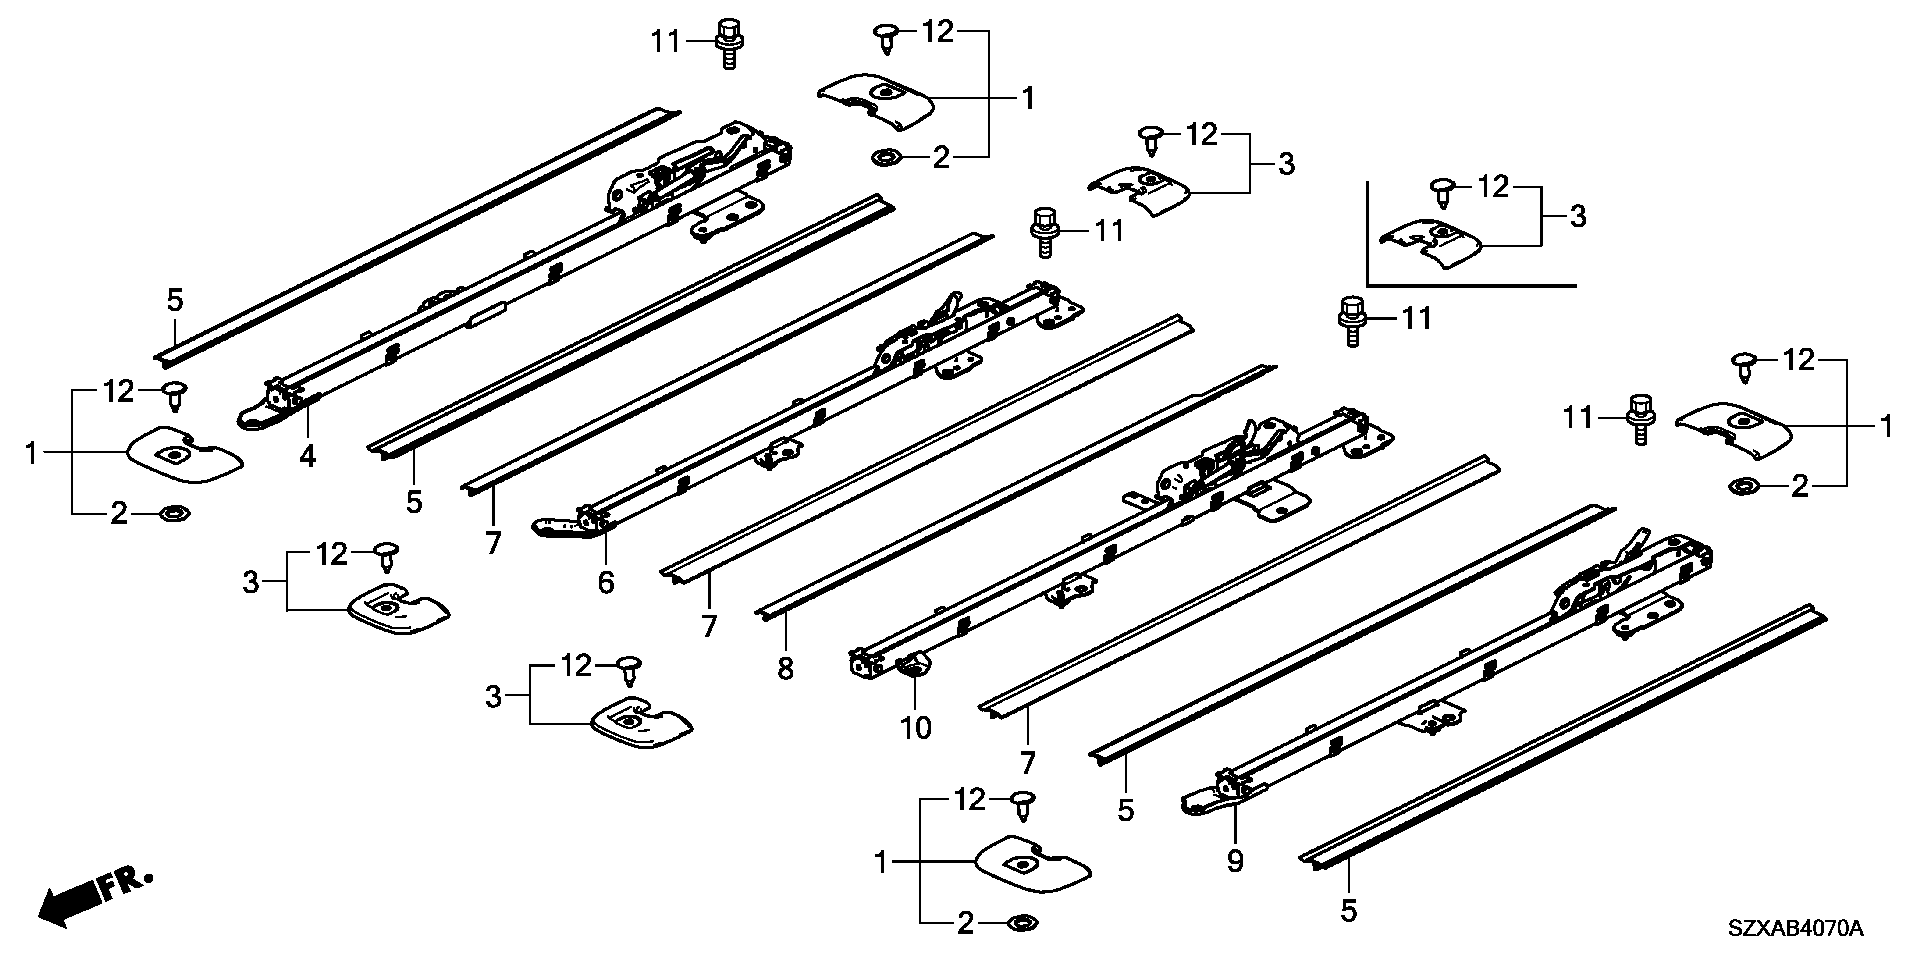 SEAT RAIL( TIP UP& SLIDING SEAT) ( CAPTAIN SEAT)